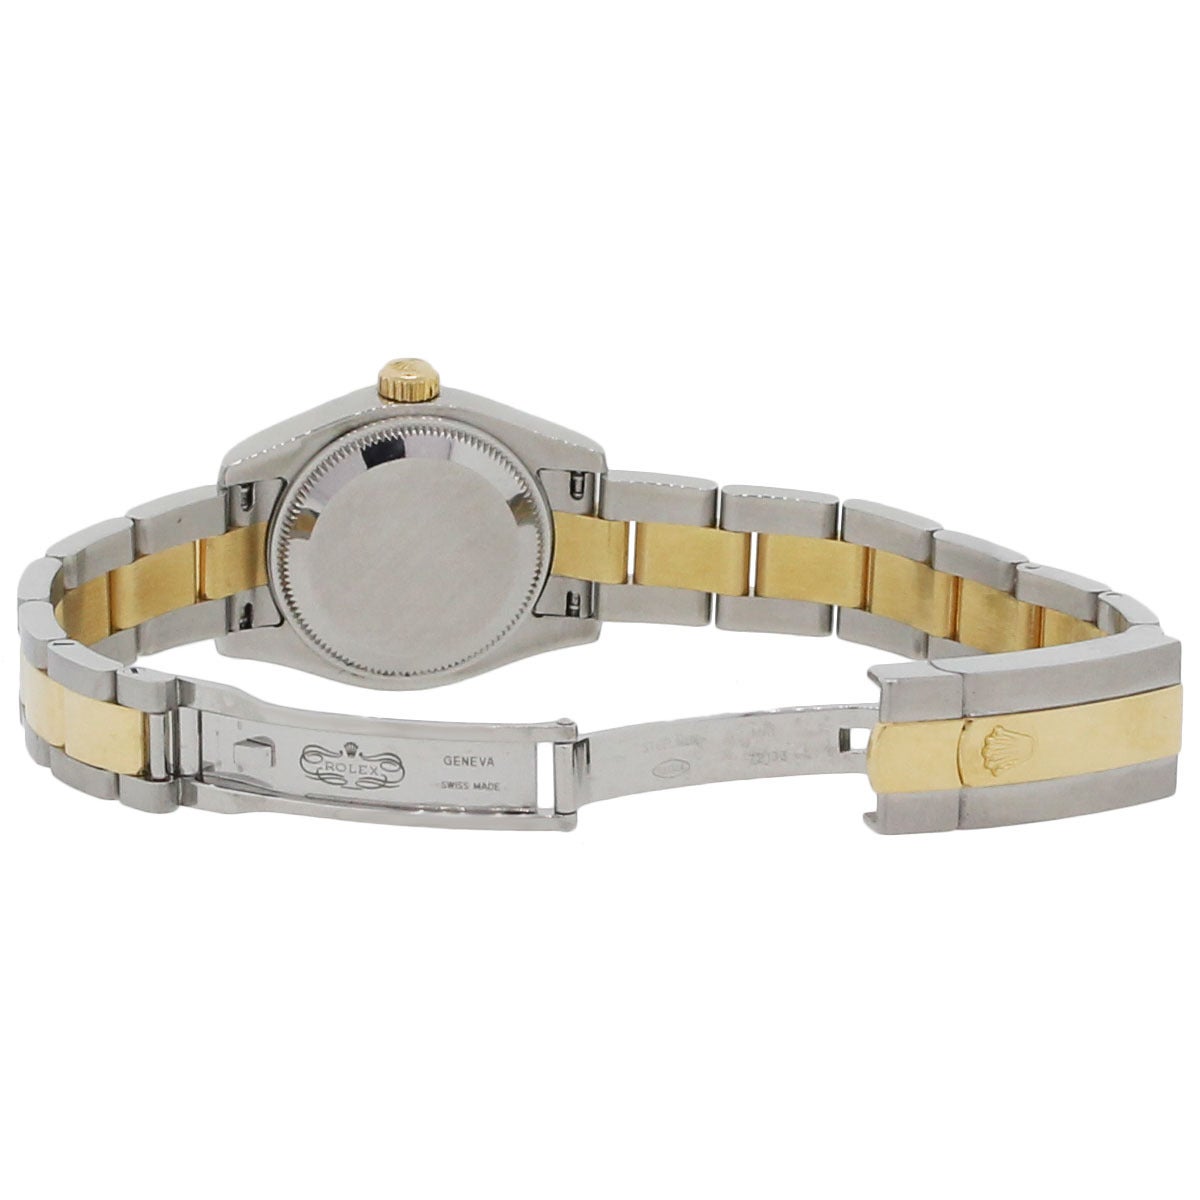 Women's Rolex Stainless Steel Datejust Jubilee Diamond Dial Wristwatch Ref 179173